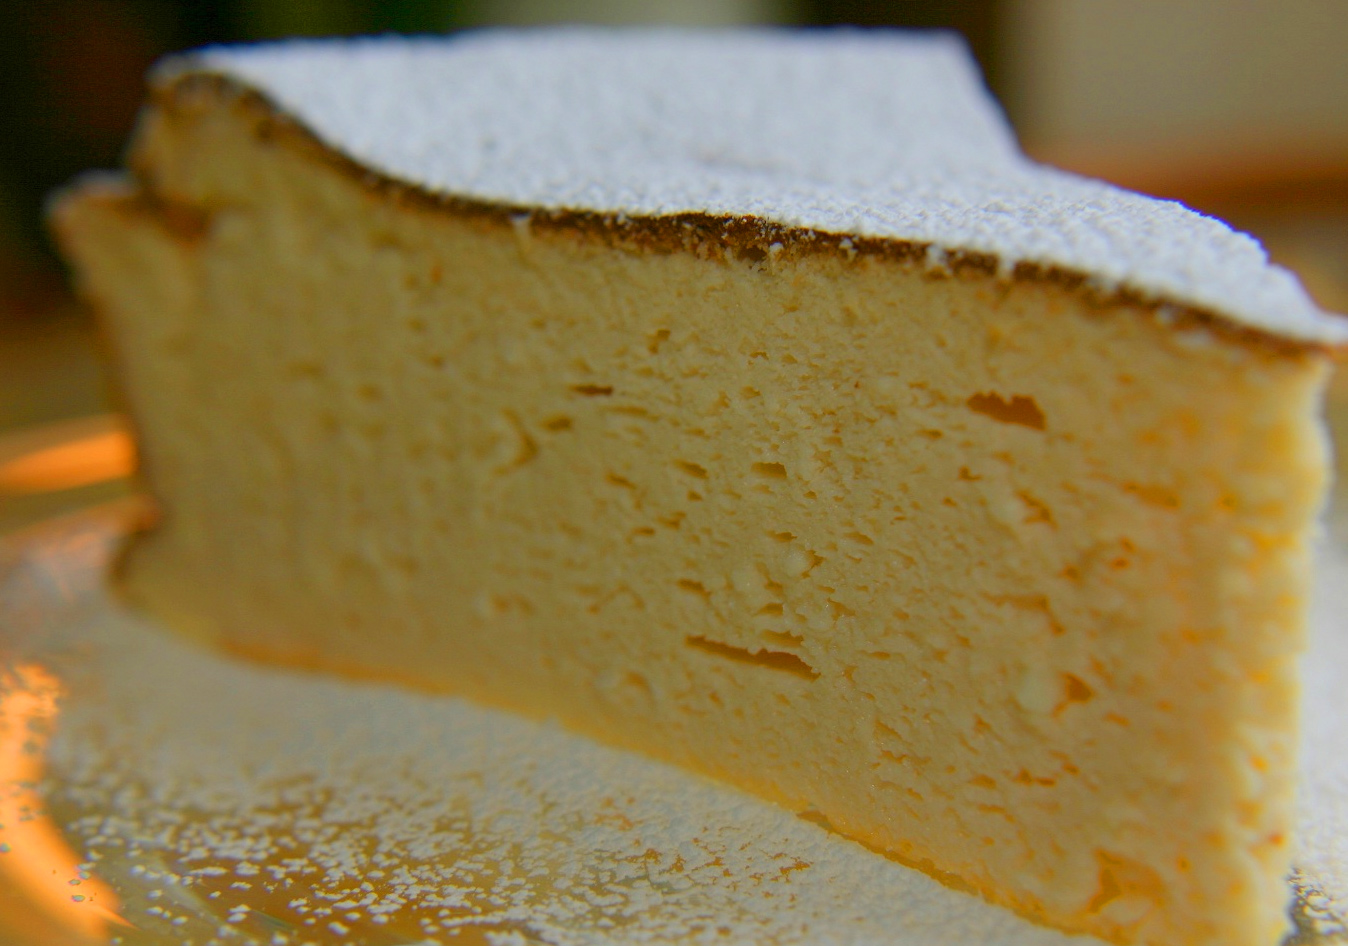 Polonya’nın geleneksel tatlısı “Sernik” (peynirli keki)